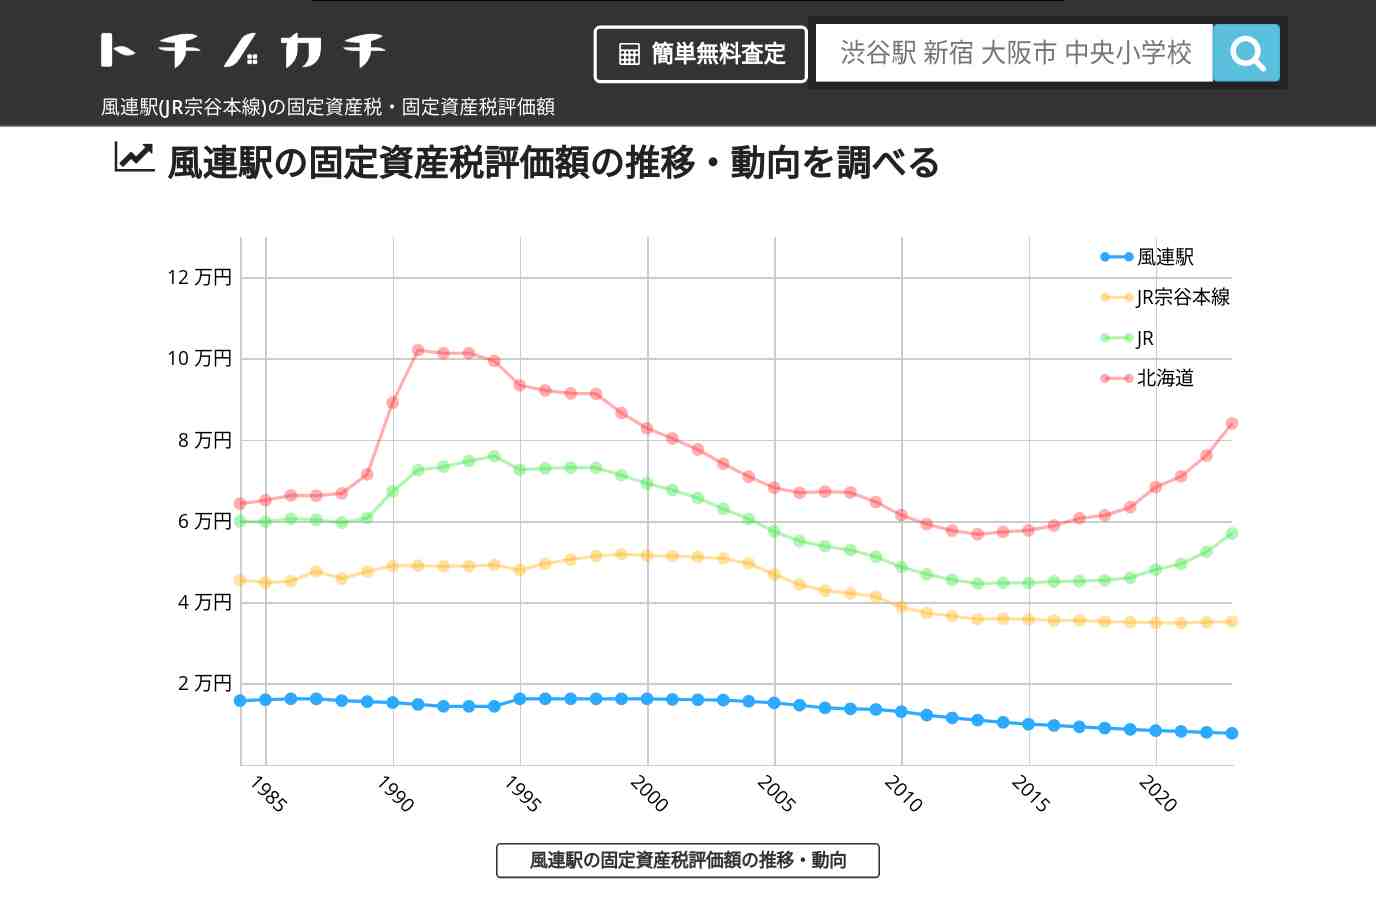 風連駅(JR宗谷本線)の固定資産税・固定資産税評価額 | トチノカチ